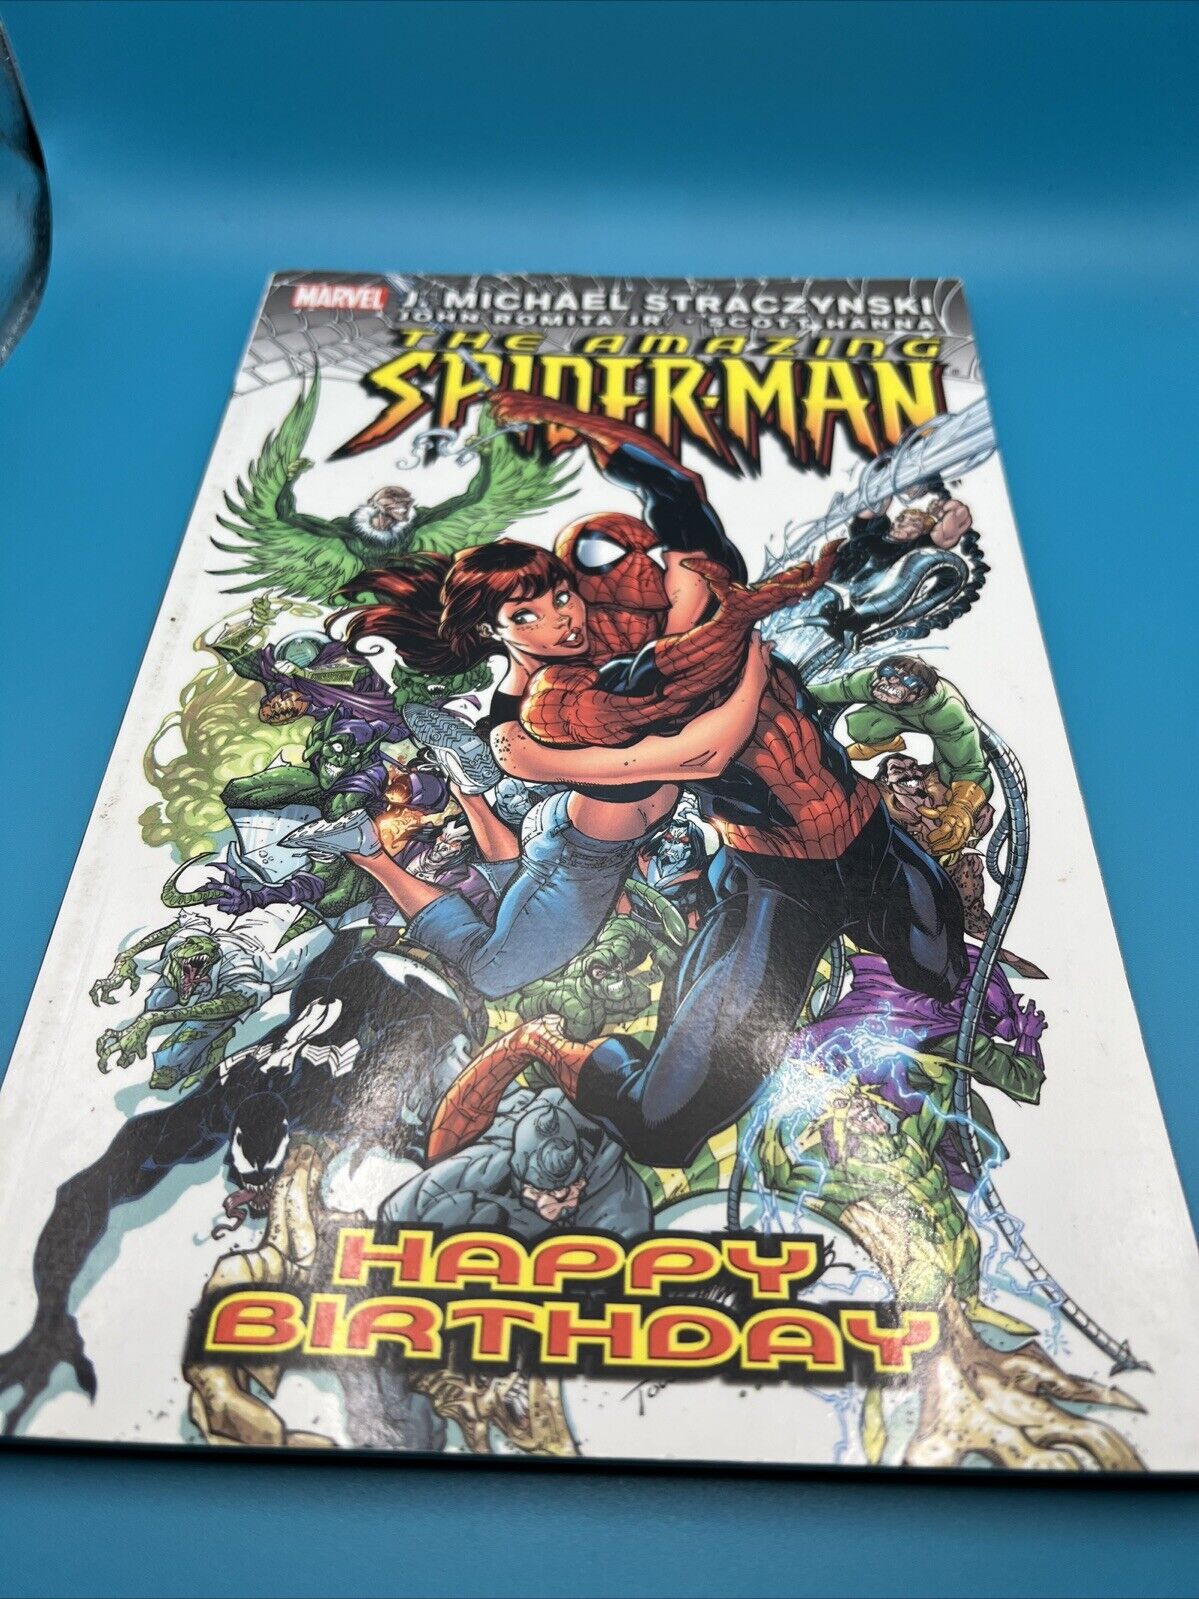 The Amazing Spider-Man - HAPPY BIRTHDAY VOL. 6 - Straczynski - Graphic Novel TPB